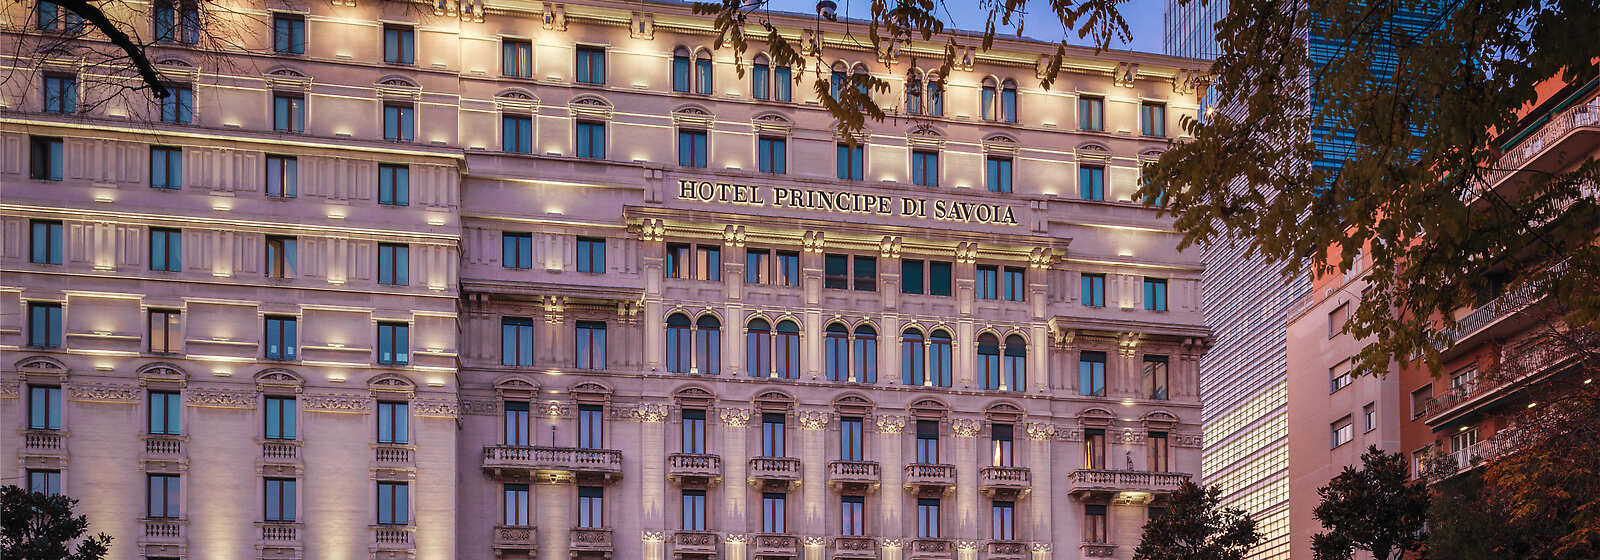 Hotel Principe di Savoia facade